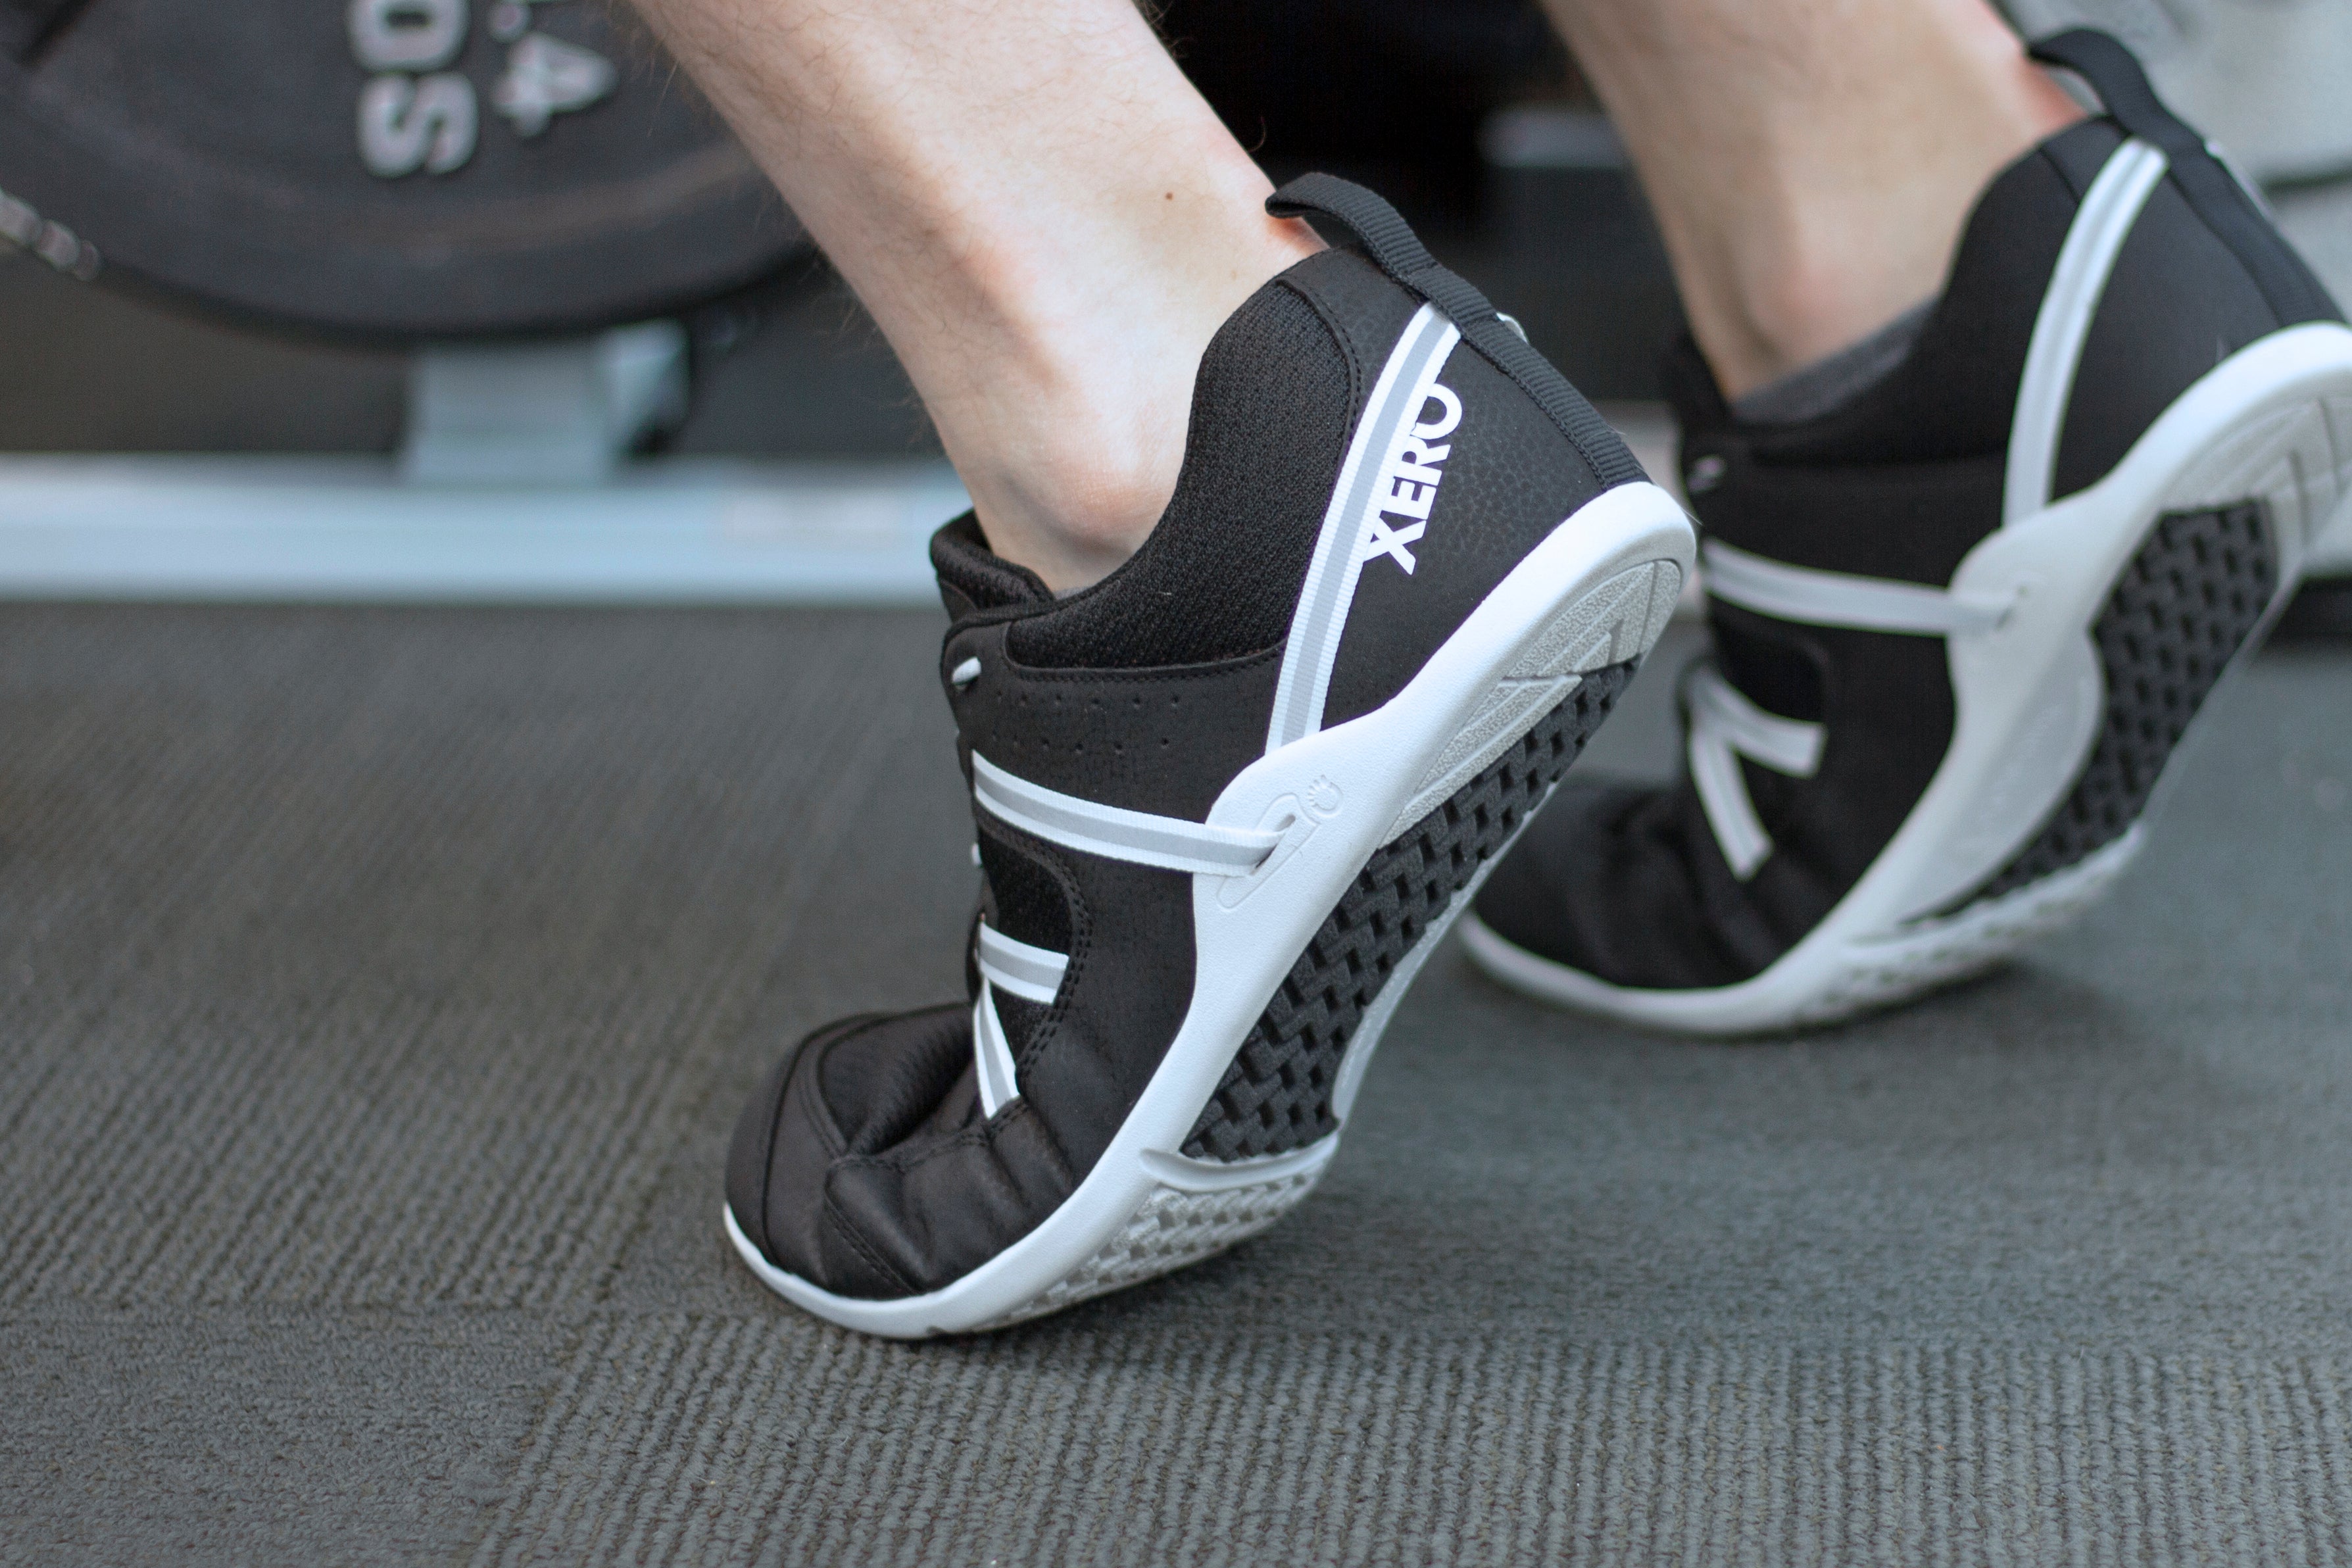 Xero Shoes Prio barfods løbesko/træningssko til mænd i farven black/white, lifestyle